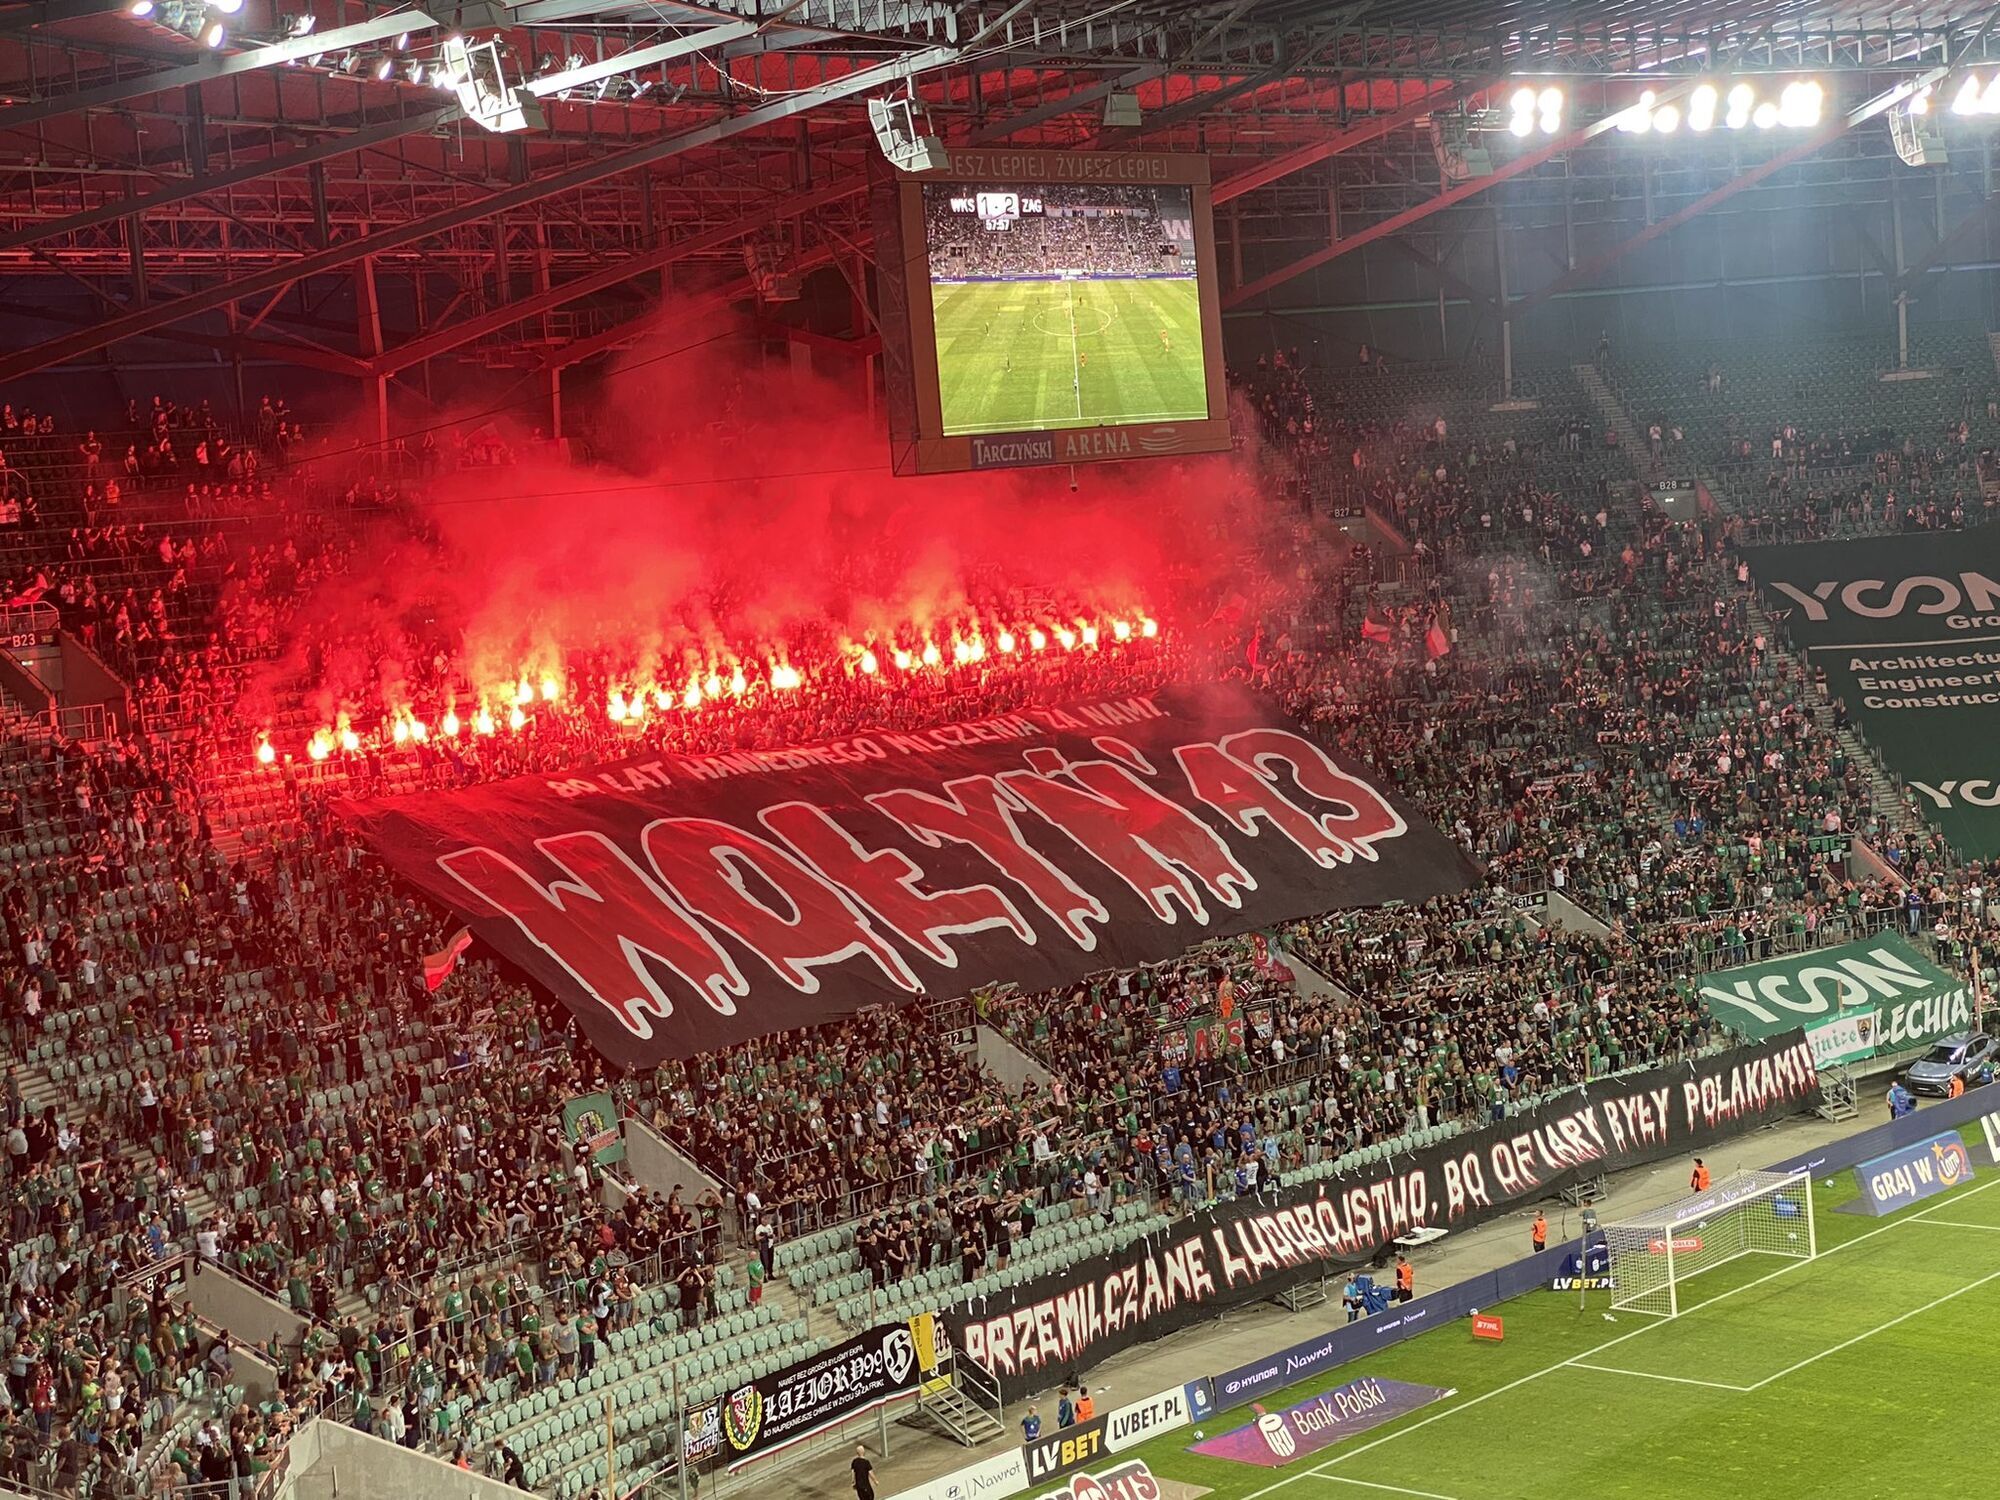 Polska protestowała przeciwko Ukrainie, wywieszając obraźliwe transparenty podczas meczu piłki nożnej. Fot. fakt